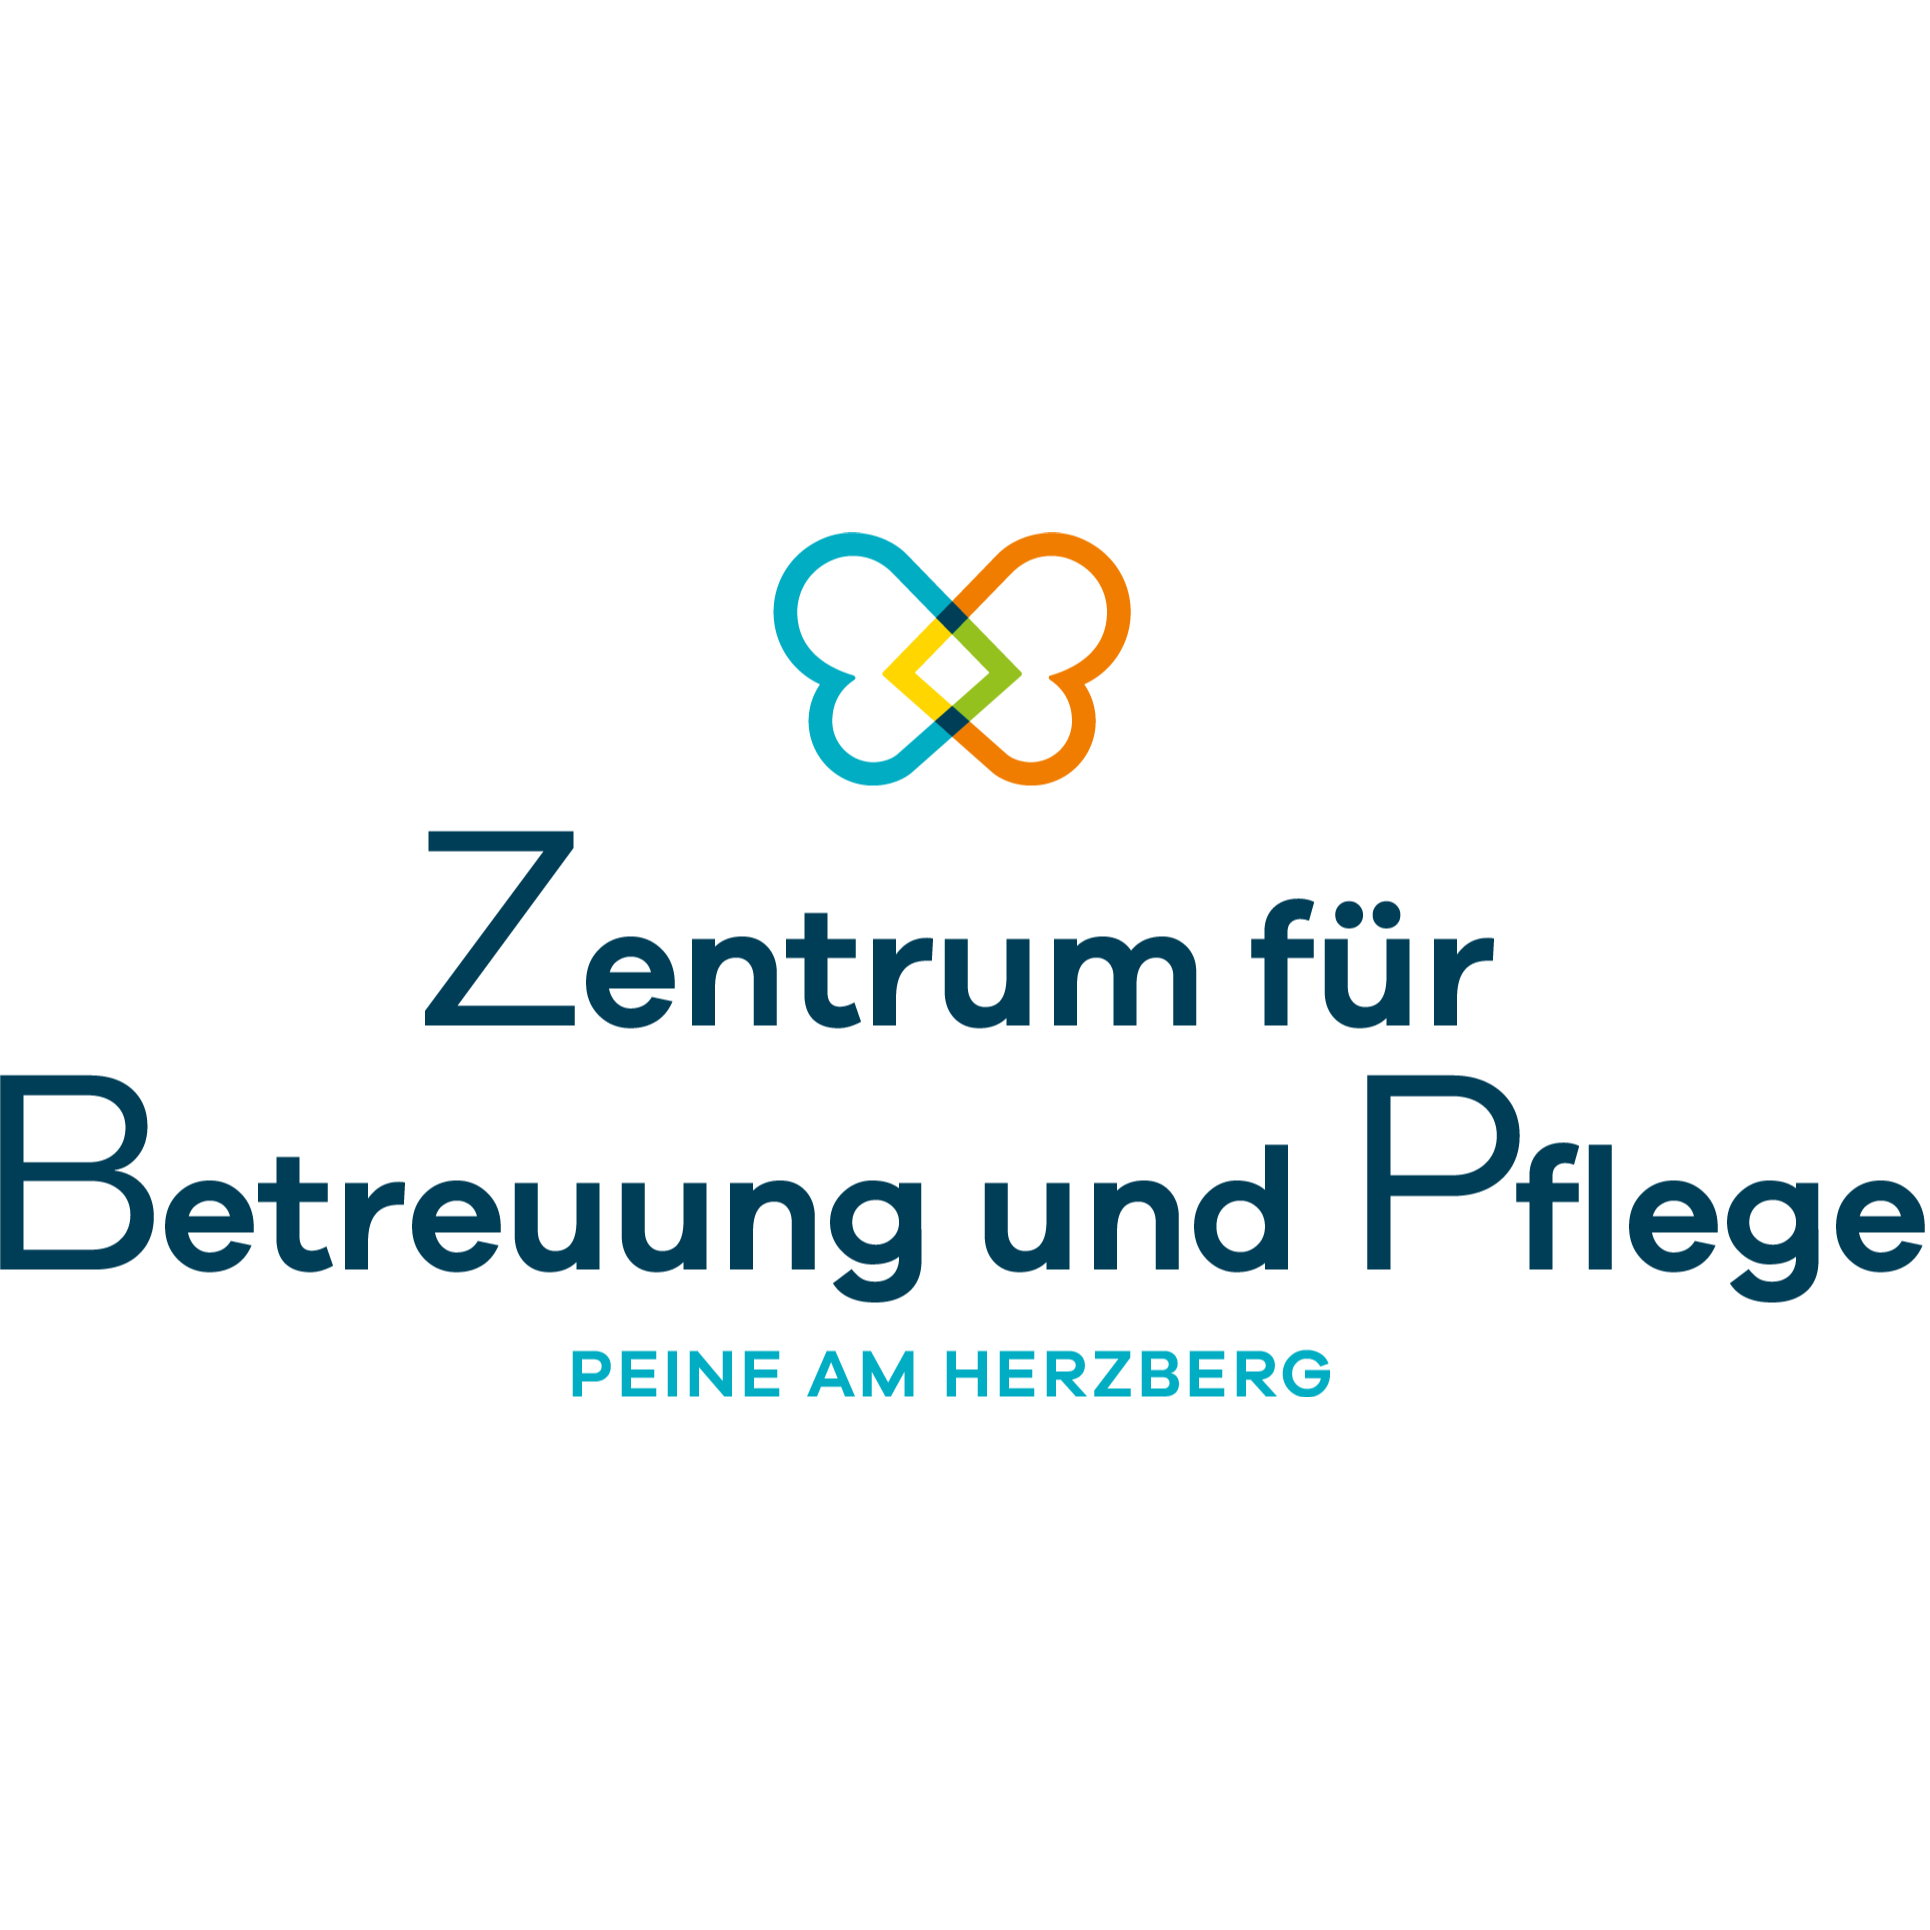 Zentrum für Betreuung und Pflege Peine am Herzberg in Peine - Logo